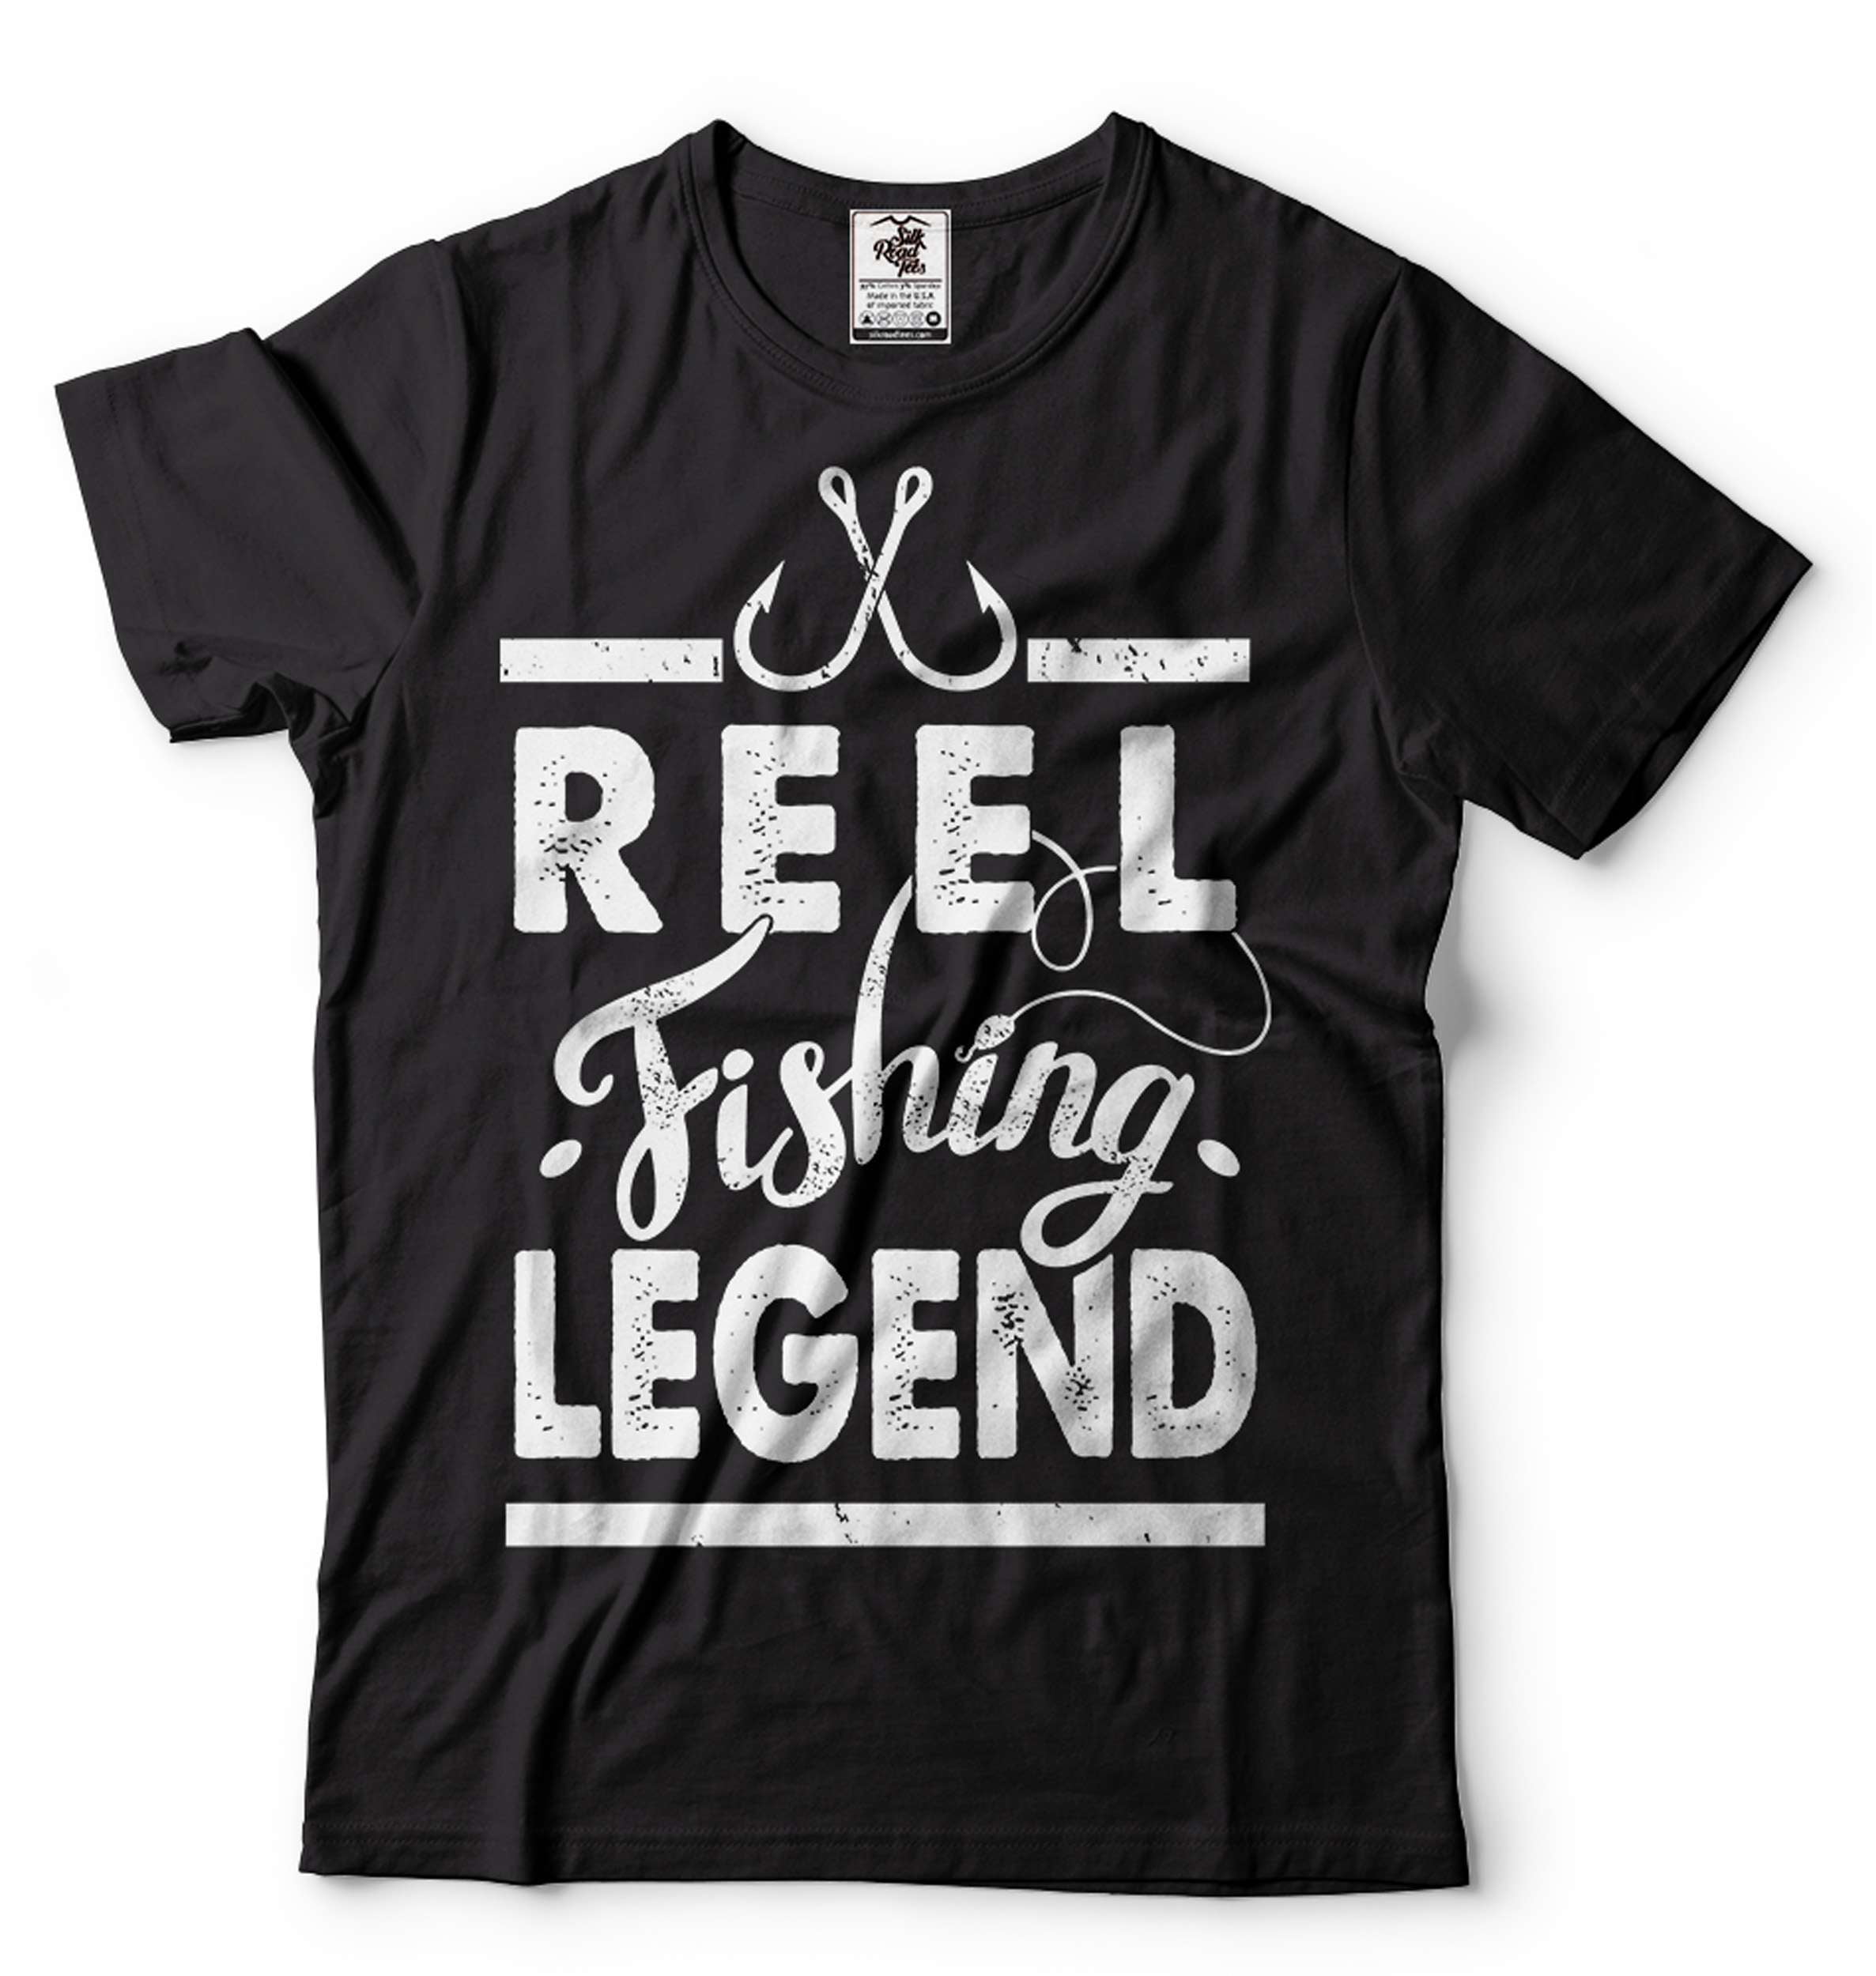 Fishing Shirt Reel Fishing Legend T-Shirt Fishing Gifts Fisherman Shirt  Father's Day Fishing Shirt (4X-Large Navy Blue)